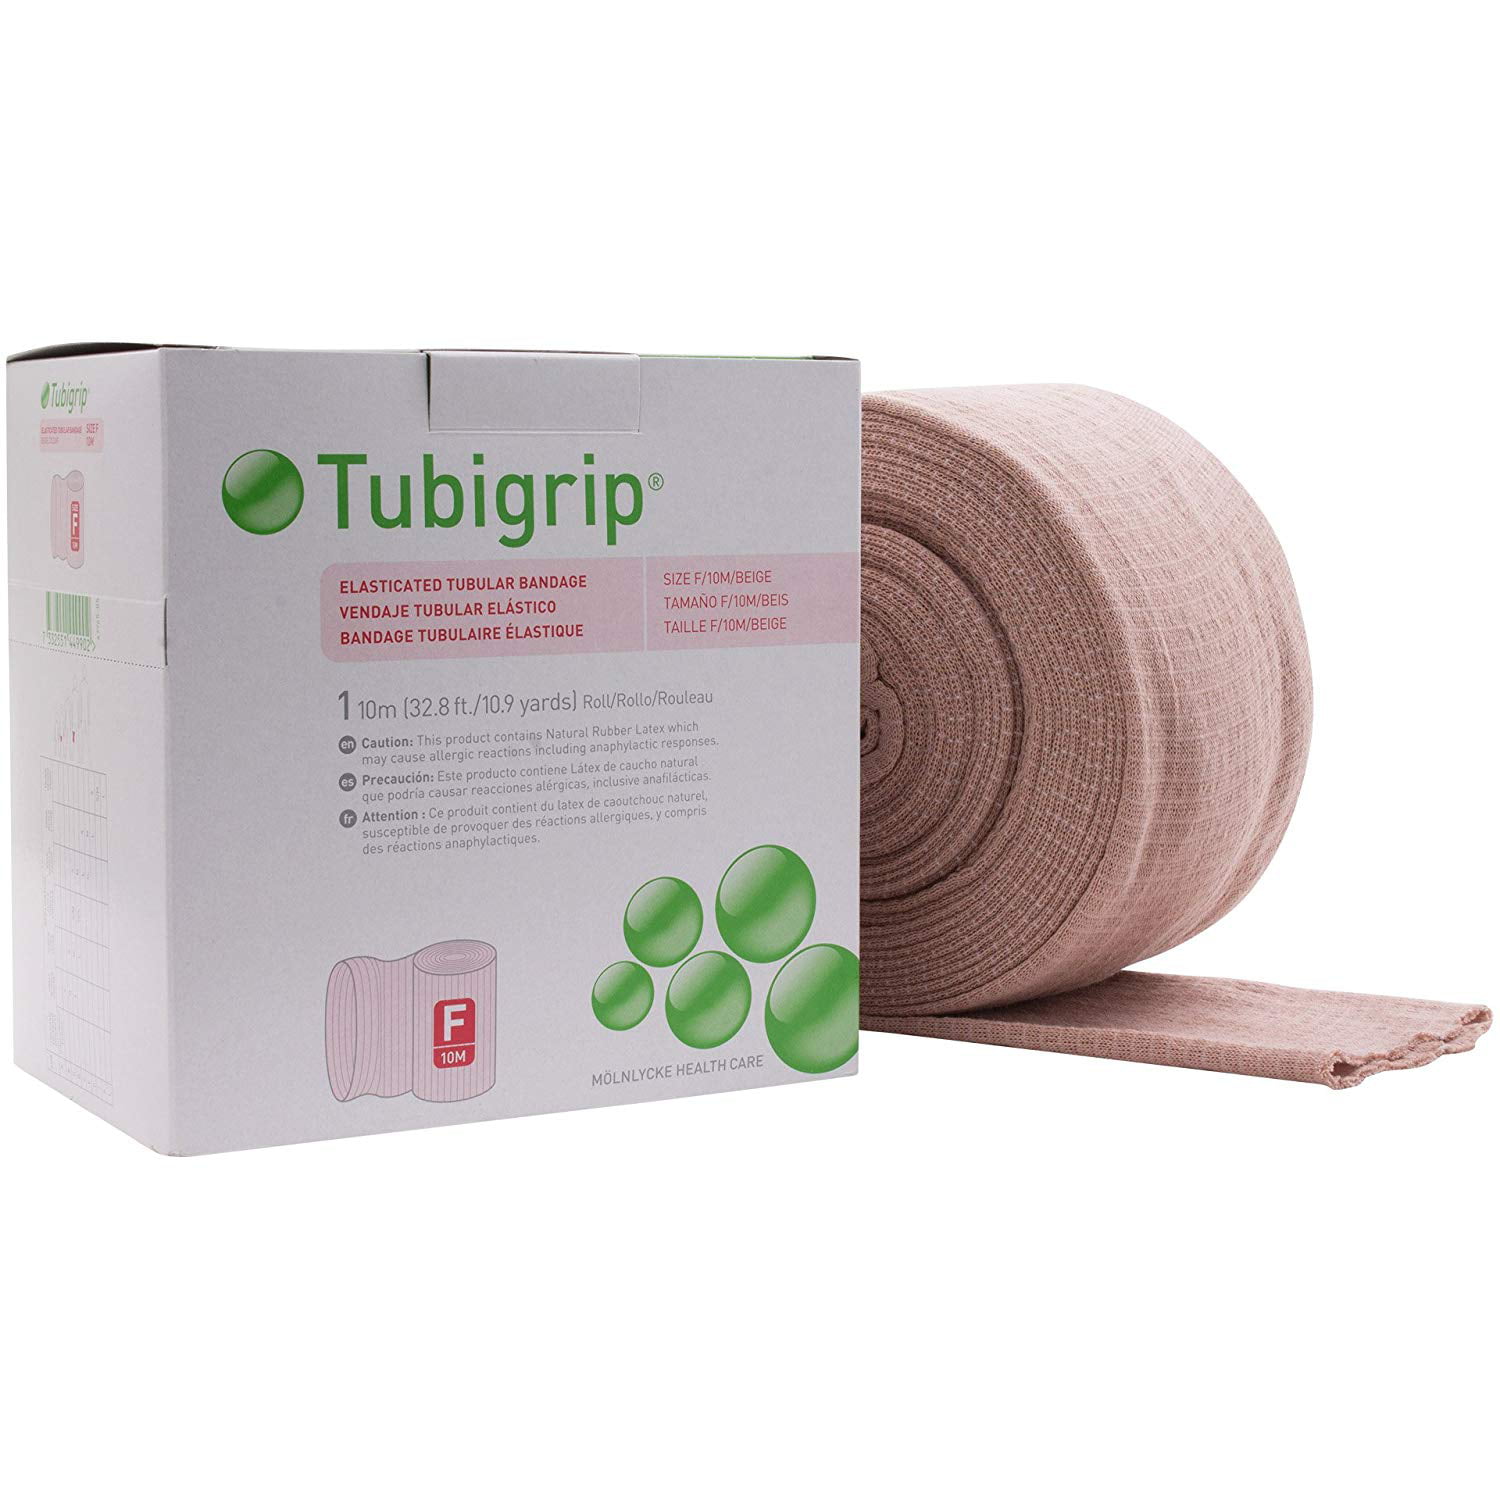 tooloflife 10m Elasticated Tubular Elastic Bandage Plaster Bandages Free  Cuting Suitable for Body Easy to Use